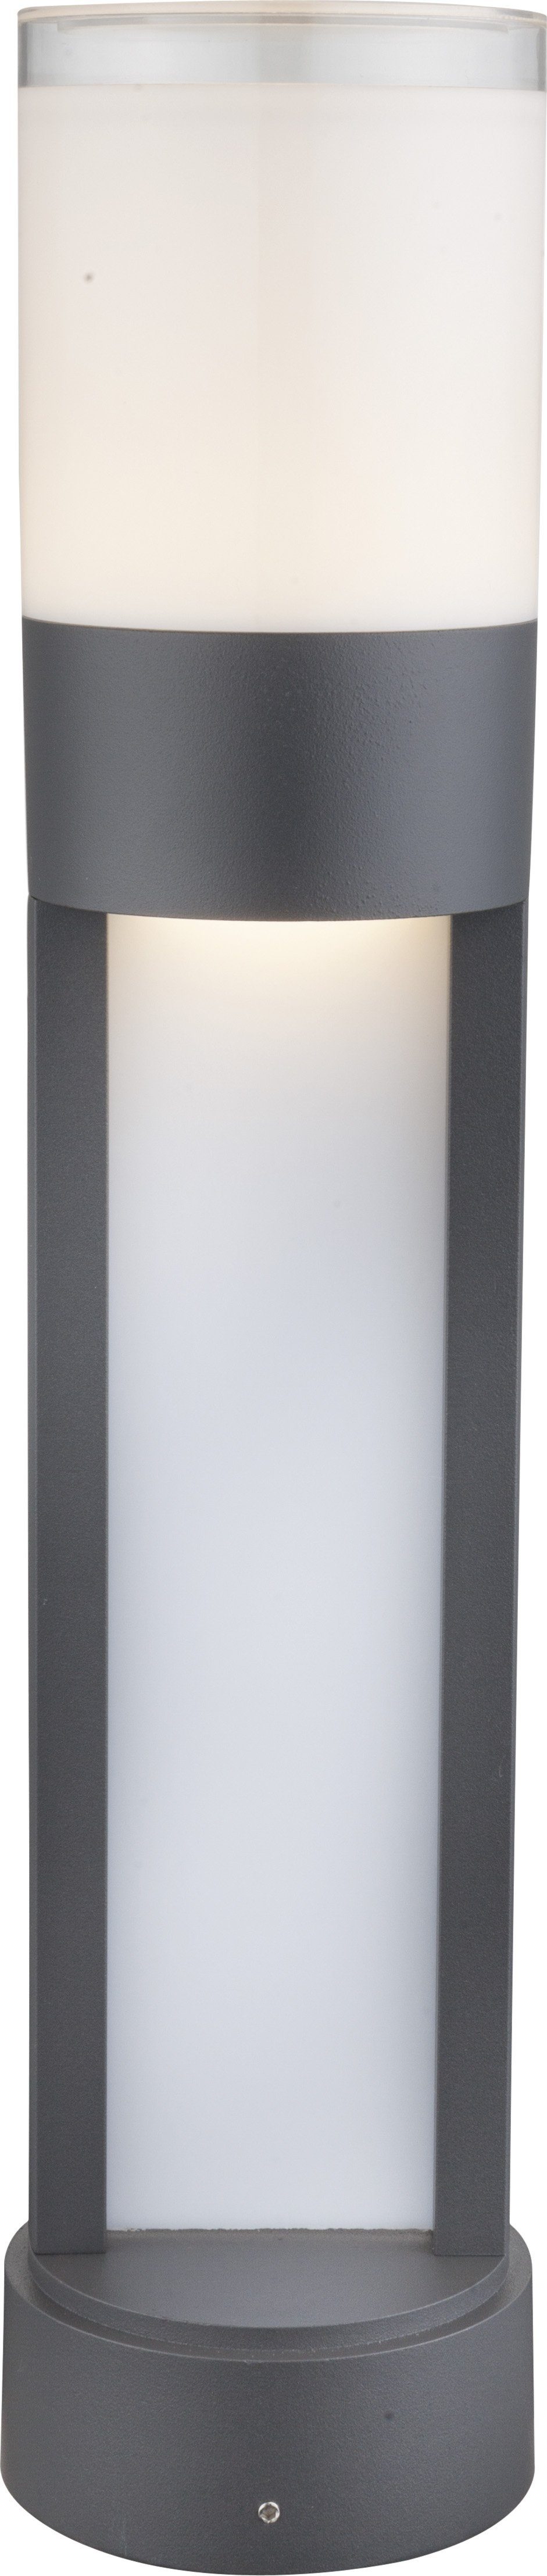 Globo Gartenleuchte GLOBO LED-Sockelleuchte Sockellampe Aluminiumdruckguss 50 cm 34012 | Alle Lampen